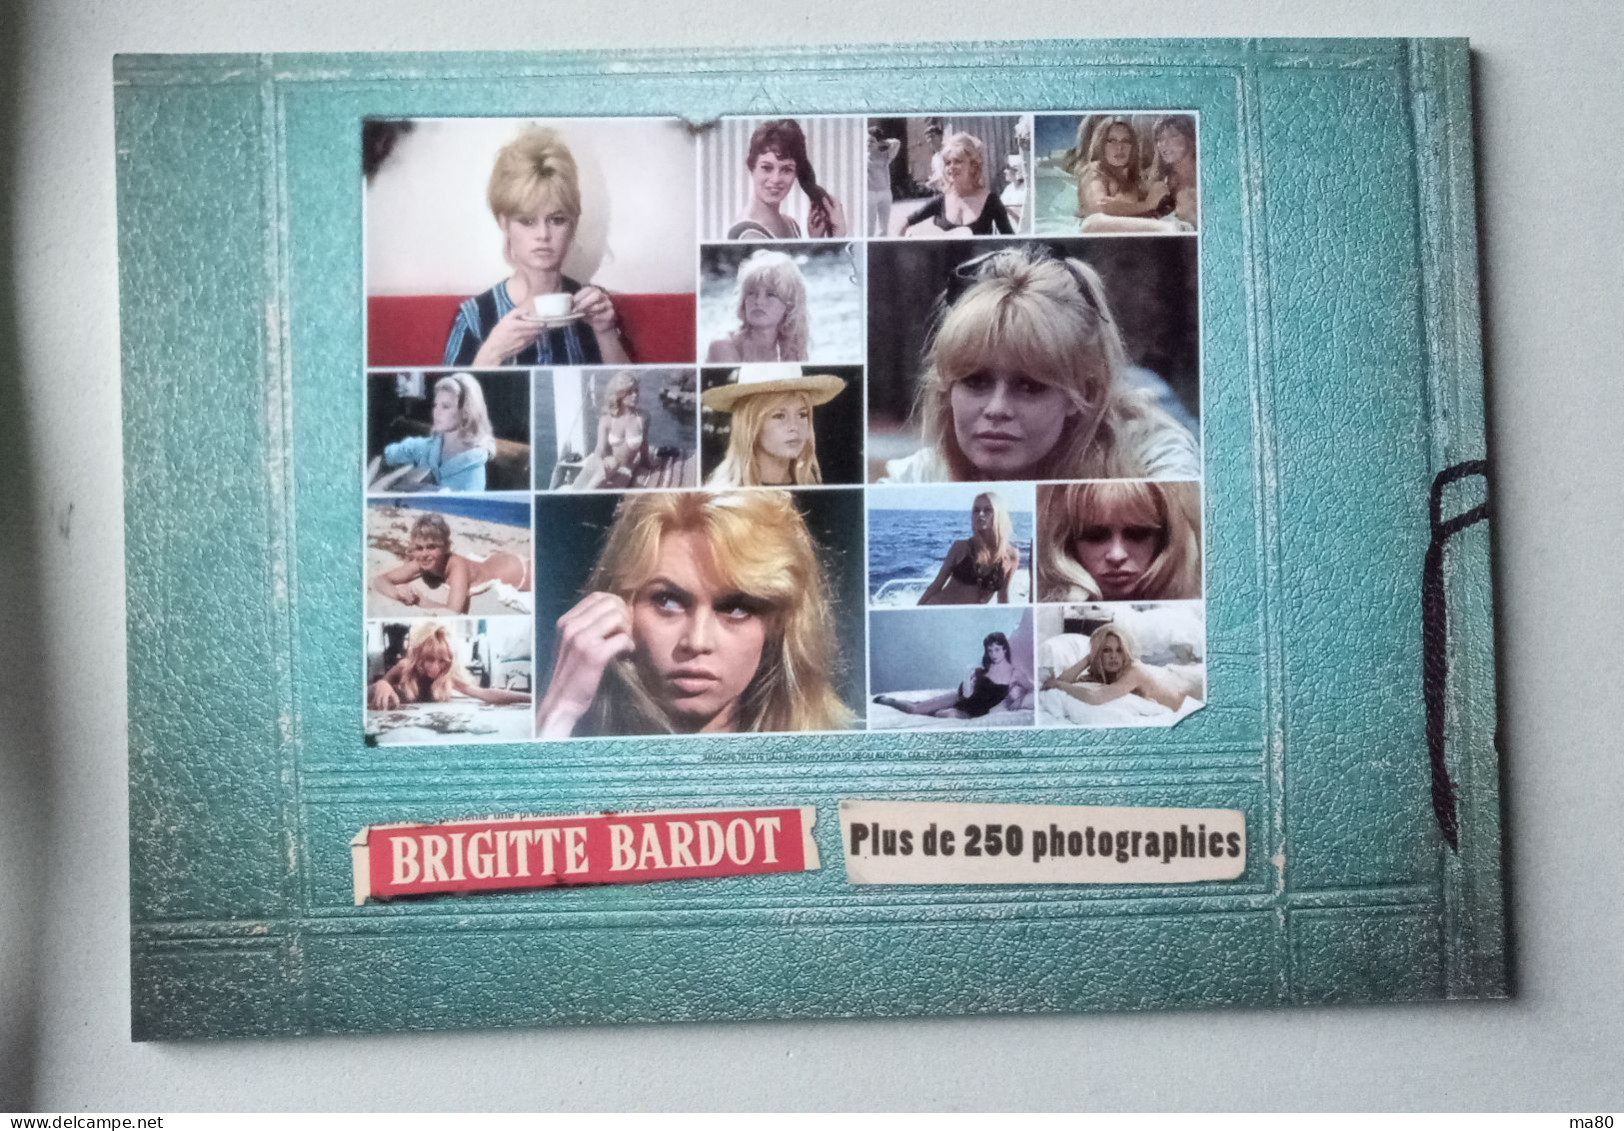 Brigitte Bardot Libro 40 Pag. 250 Foto Erotiche Sexy Anni 50 60 70 80 Circa, Cinema Film Vita Privata - Cinema Y Música